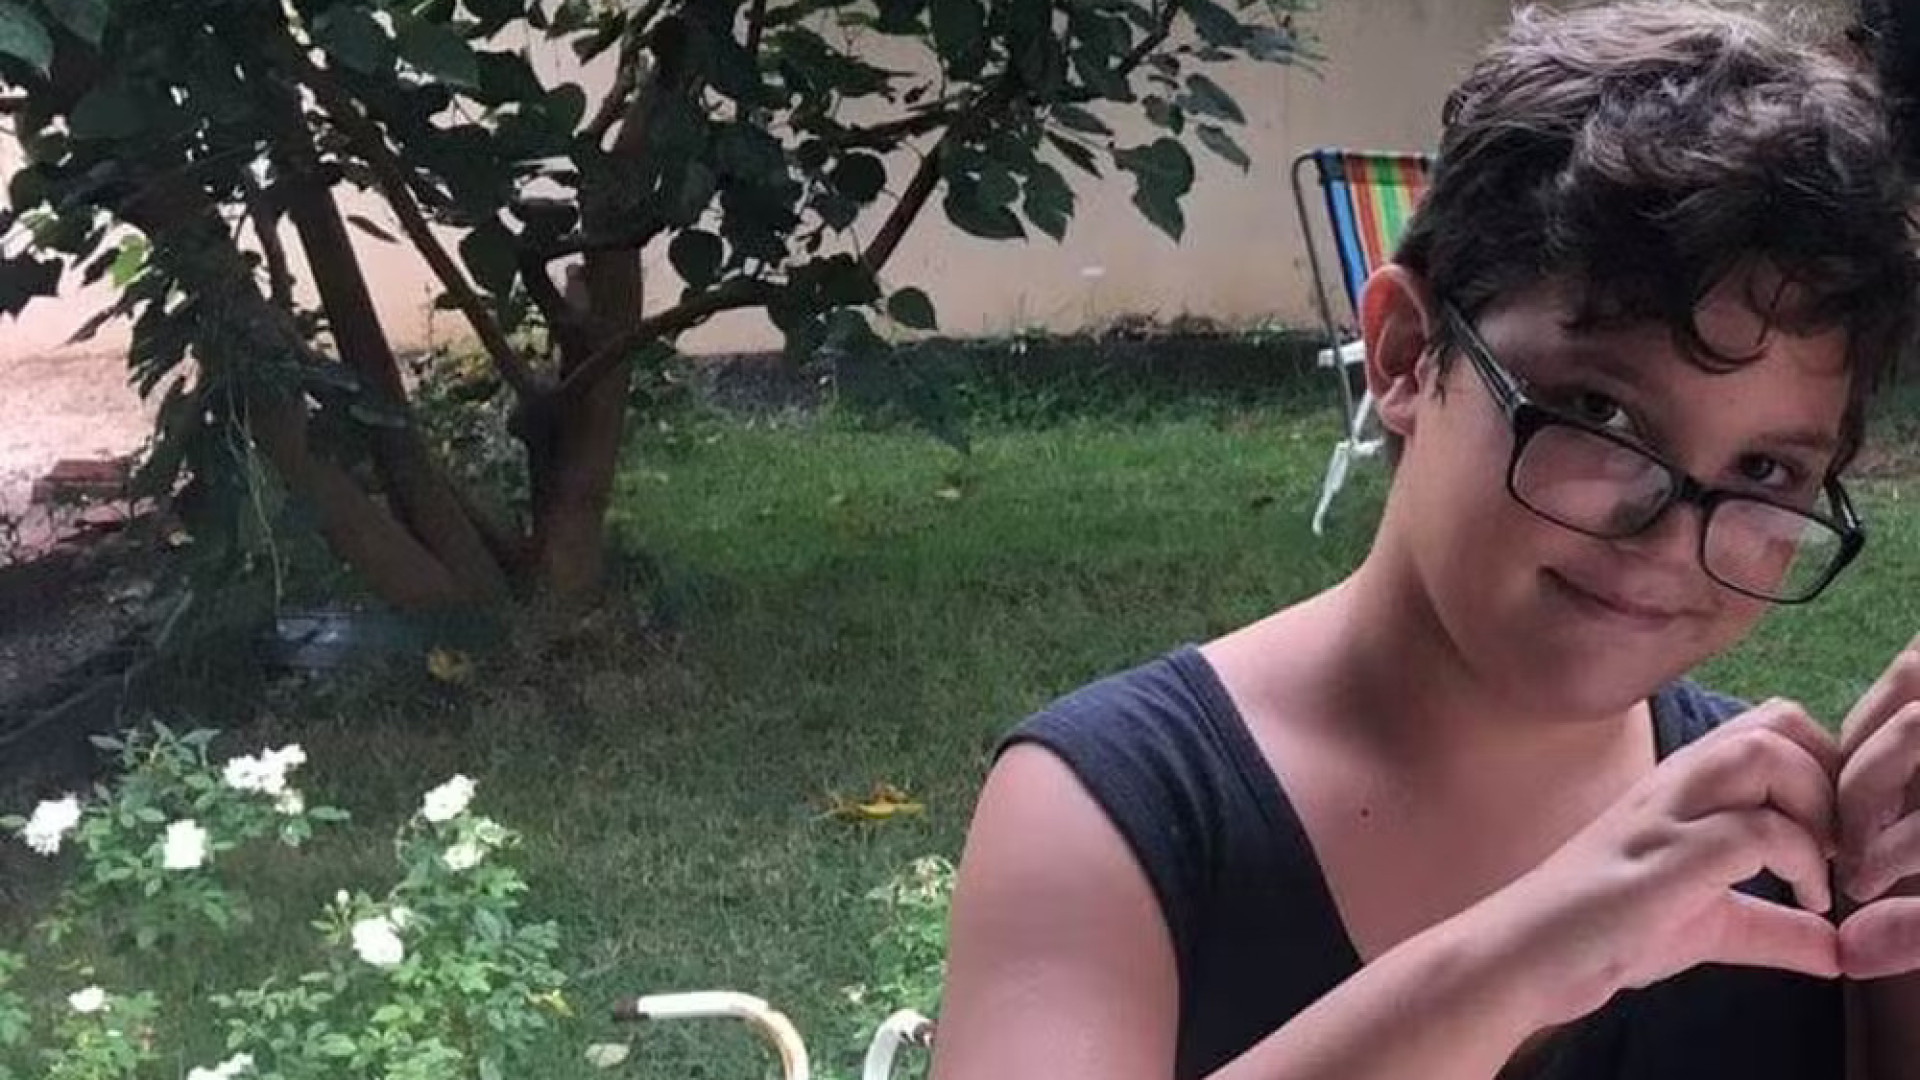 Polícia apura se menino de 12 anos morto foi alvo de homofobia; padrasto está preso